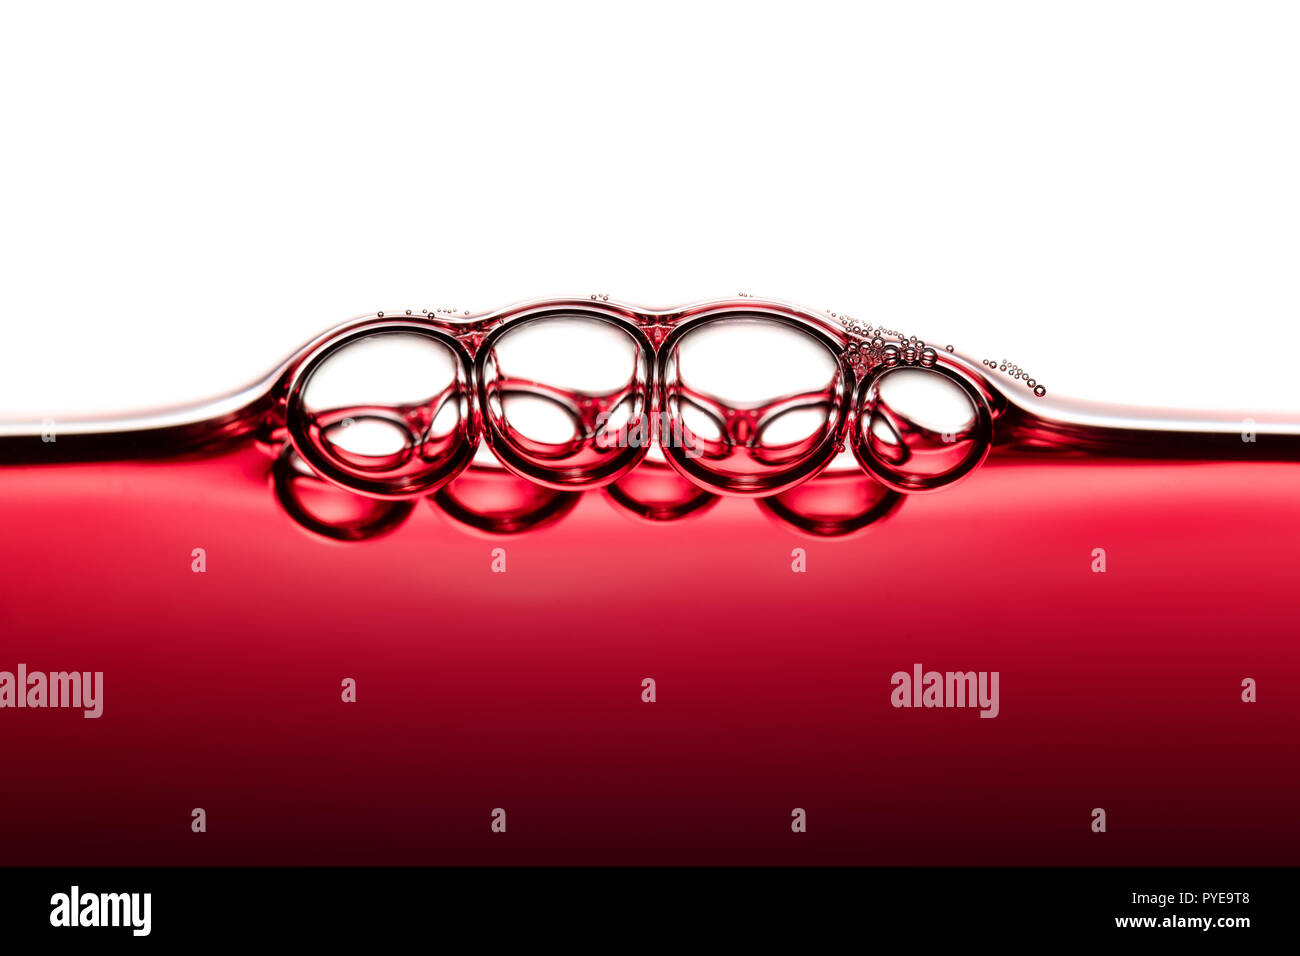 Résumé de l'Art de l'Alimentation symétrique des bulles de Vin Rouge photographié close-up against white background Banque D'Images